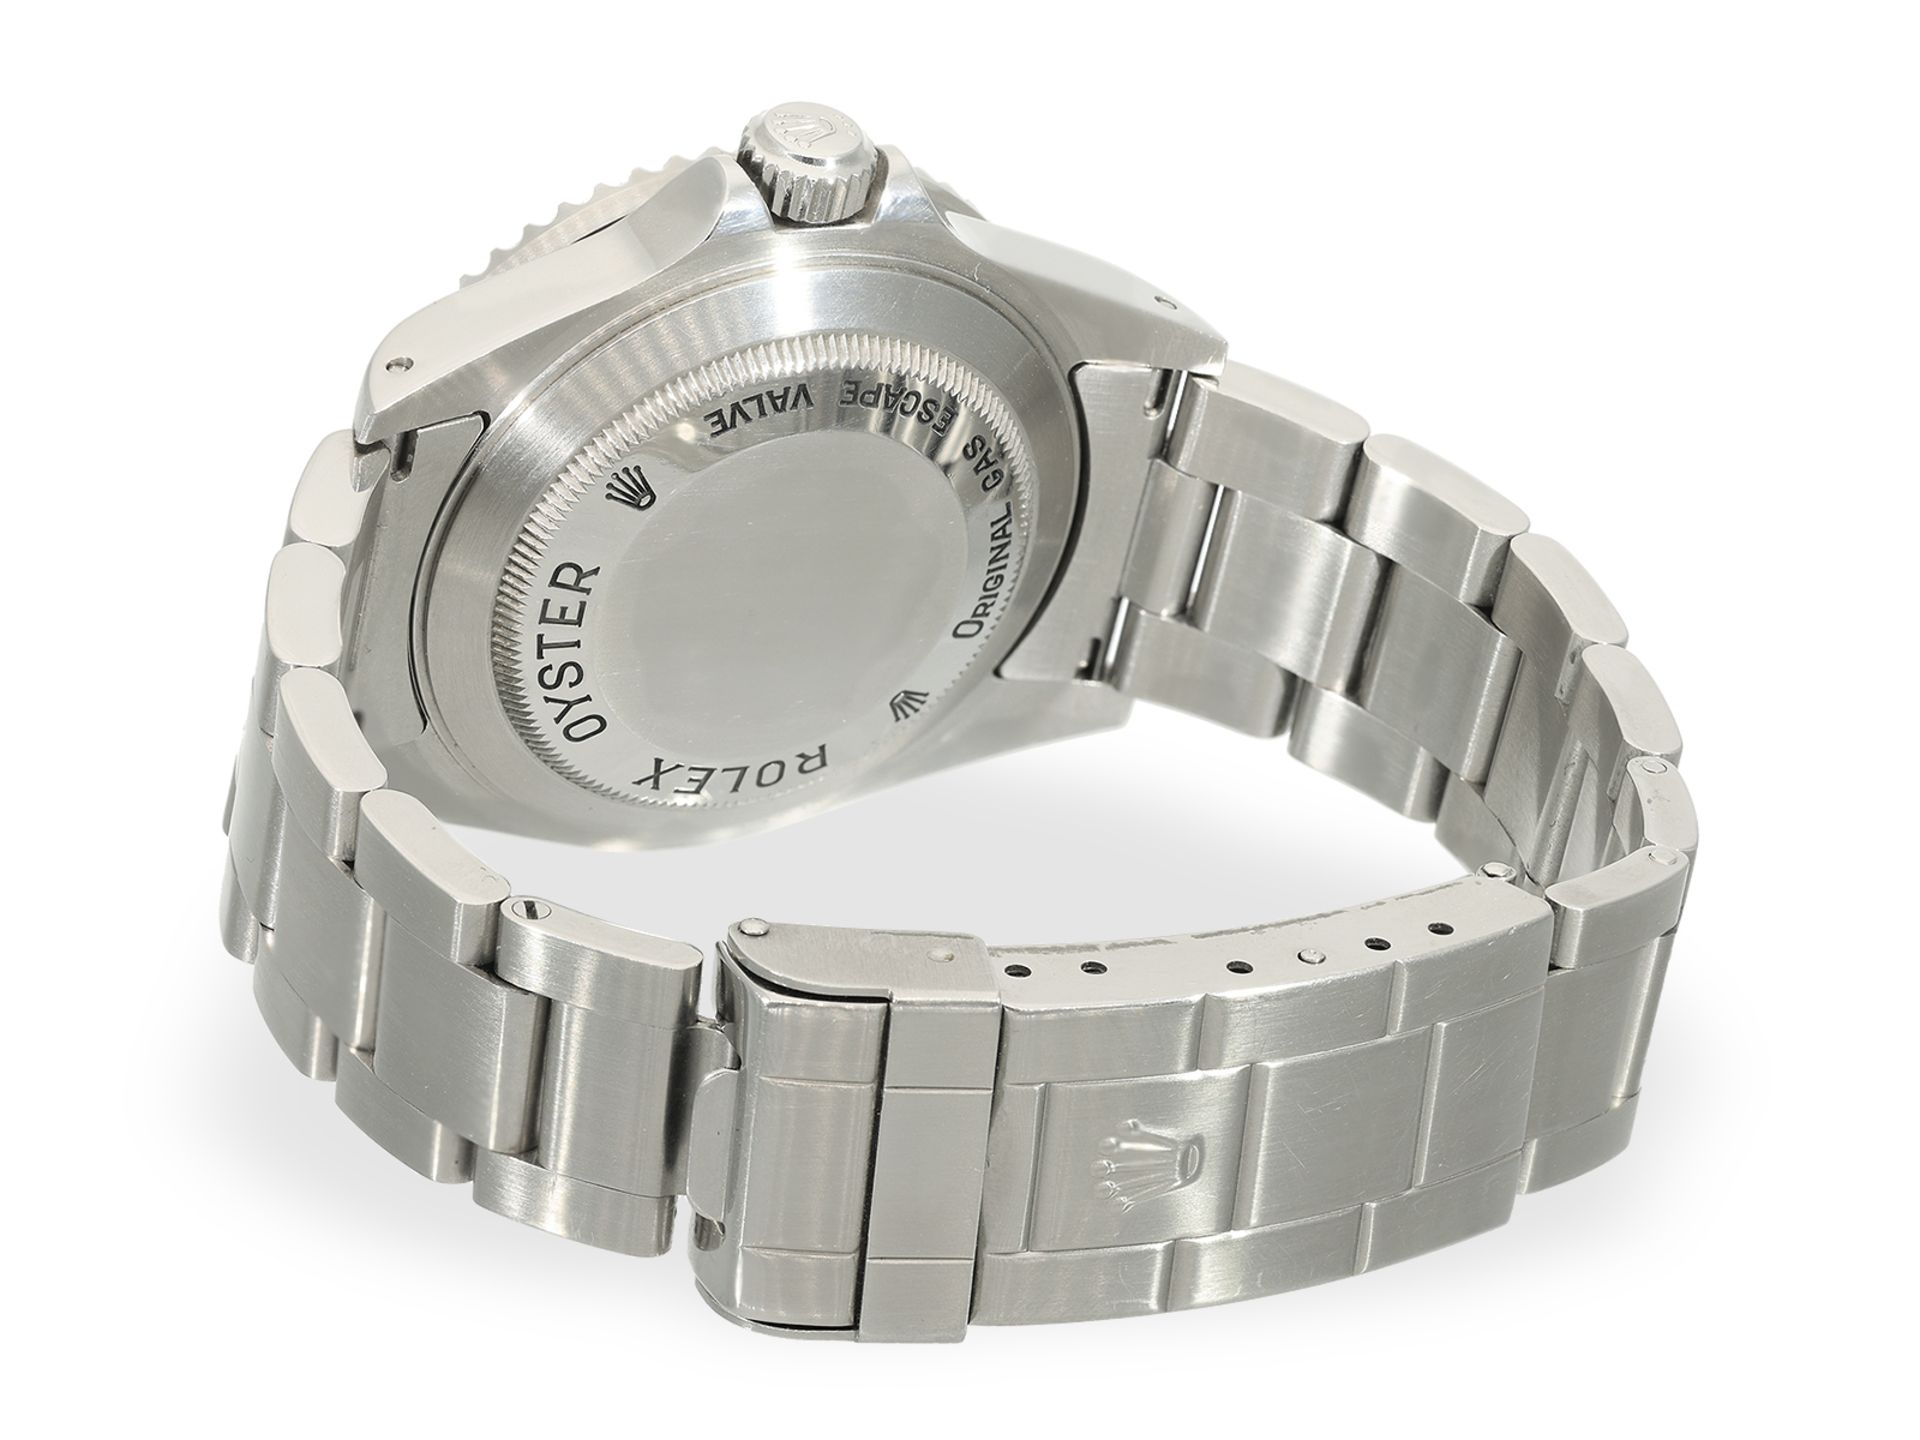 Armbanduhr: Rolex Sea-Dweller REF. 16600, Stahl, Box & Papiere, 2002/2003 - Bild 4 aus 10